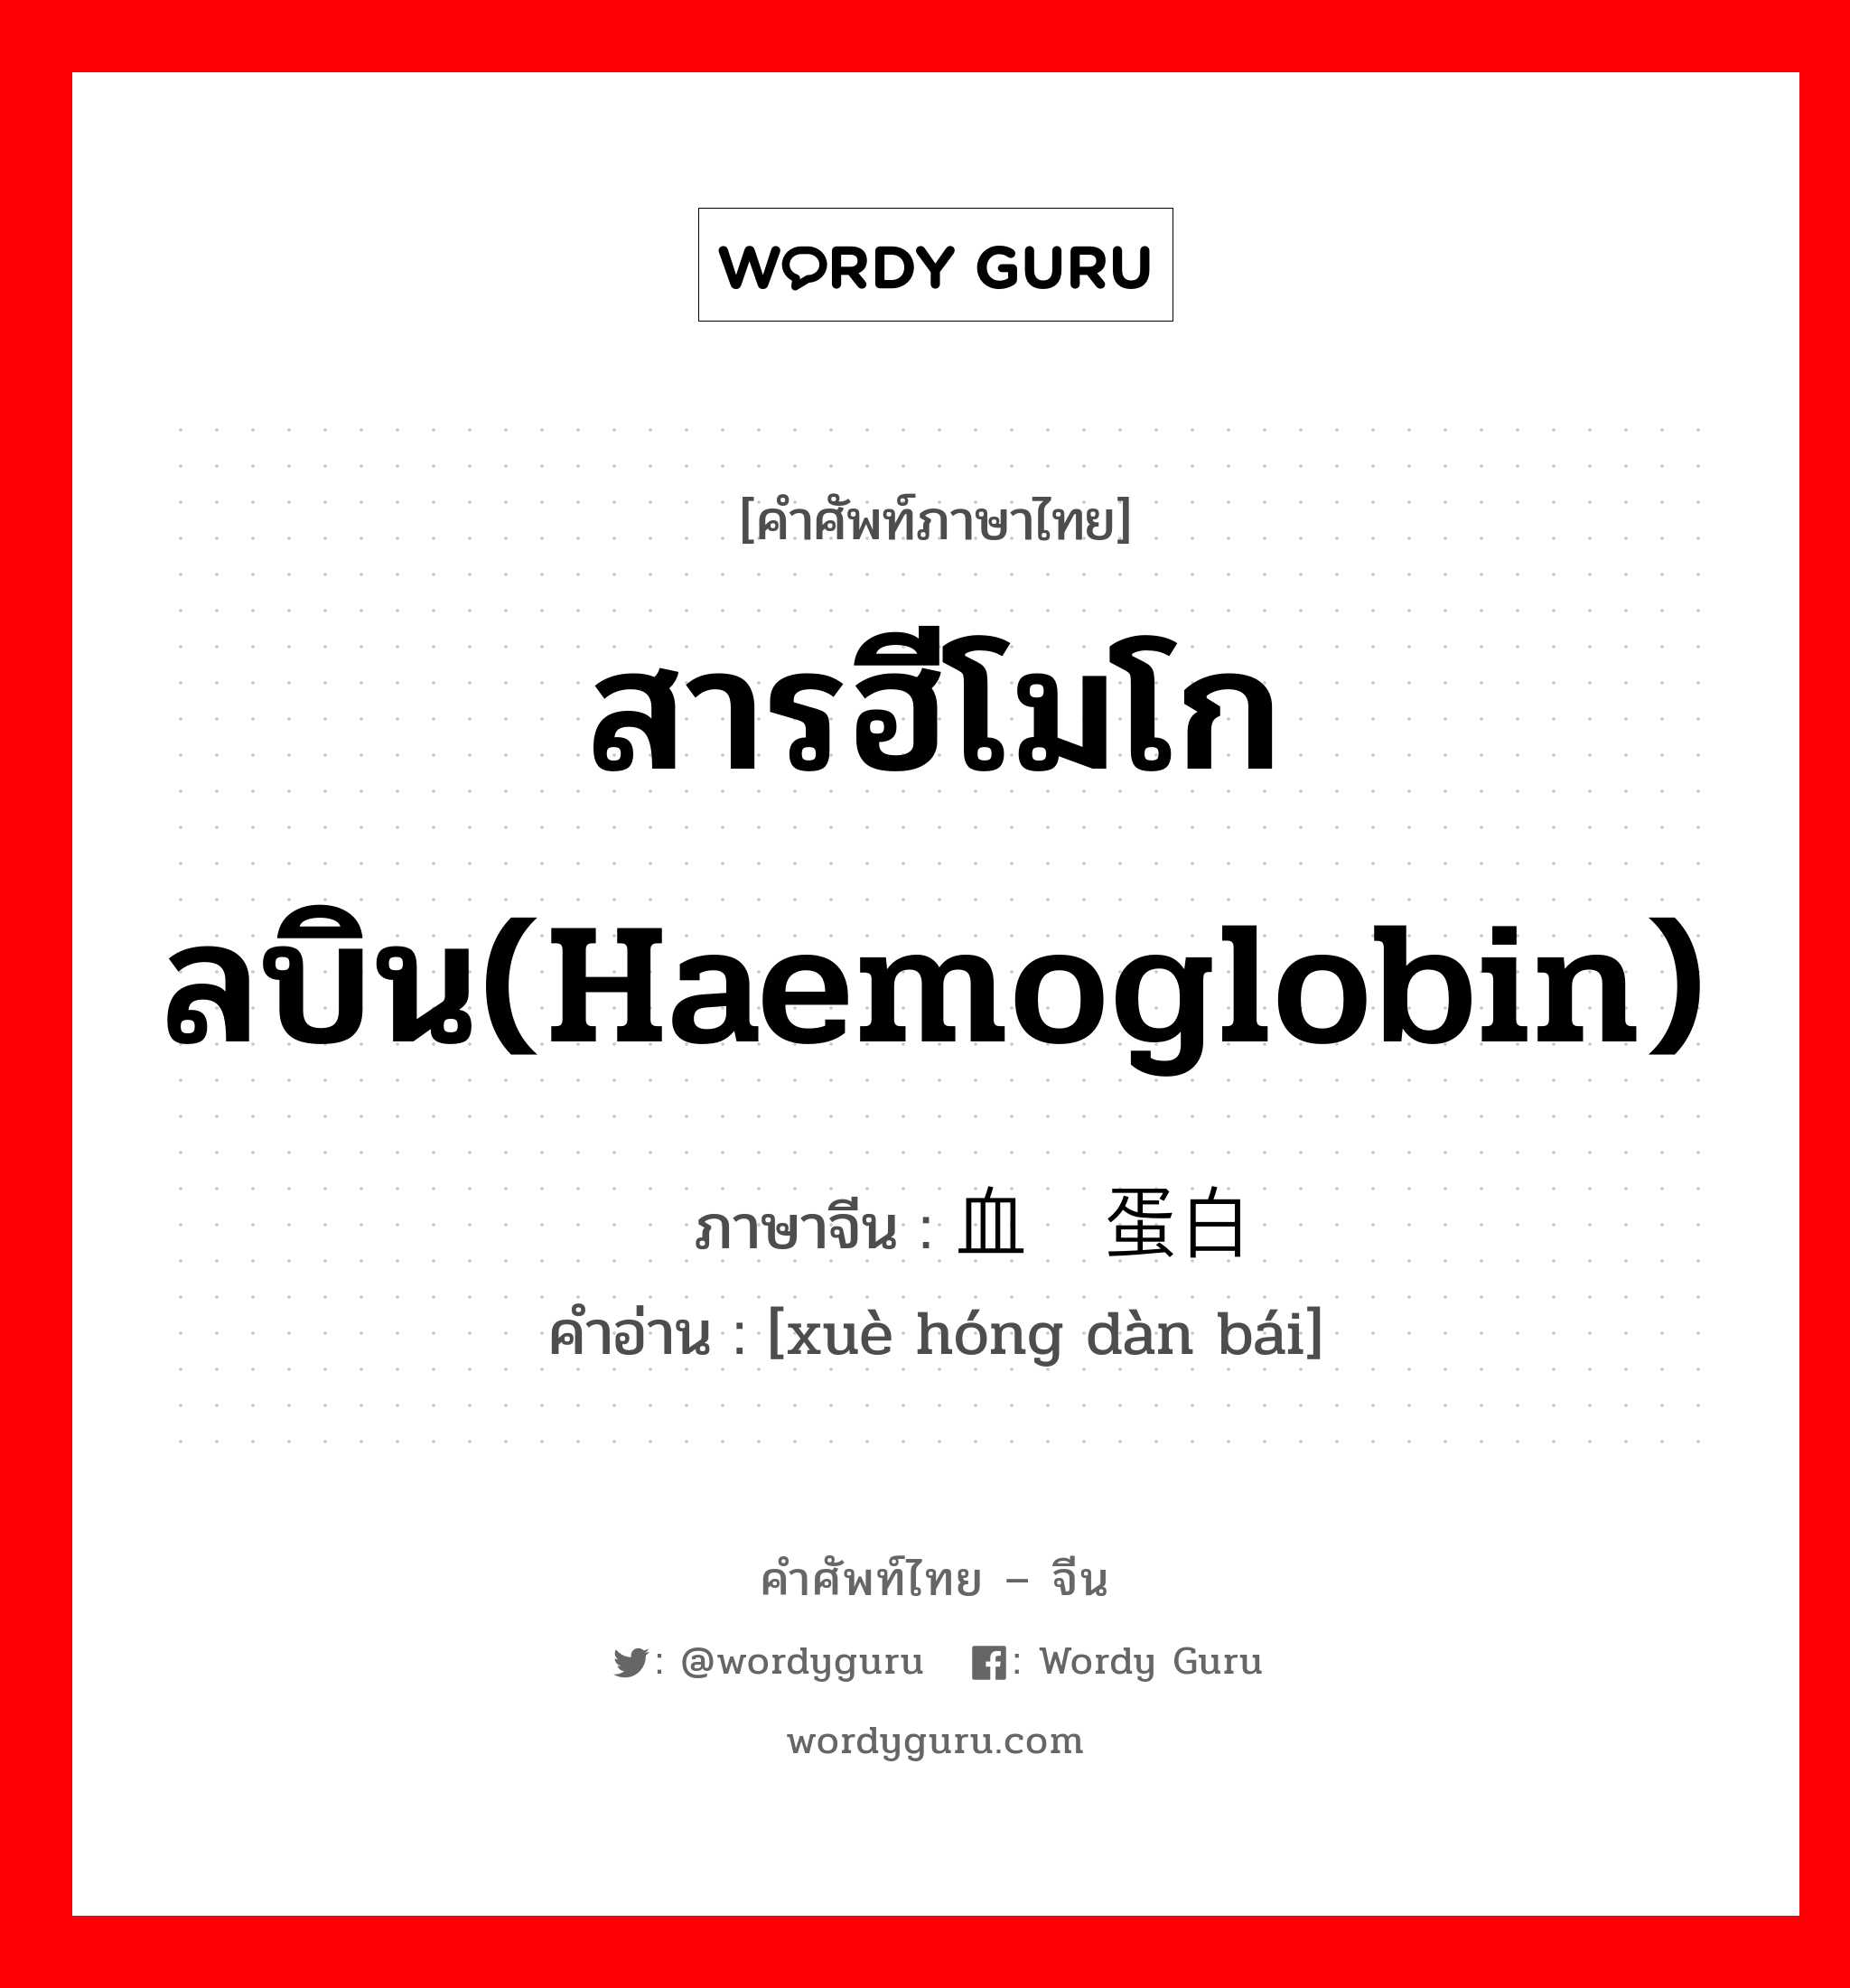 สารฮีโมโกลบิน(haemoglobin) ภาษาจีนคืออะไร, คำศัพท์ภาษาไทย - จีน สารฮีโมโกลบิน(haemoglobin) ภาษาจีน 血红蛋白 คำอ่าน [xuè hóng dàn bái]